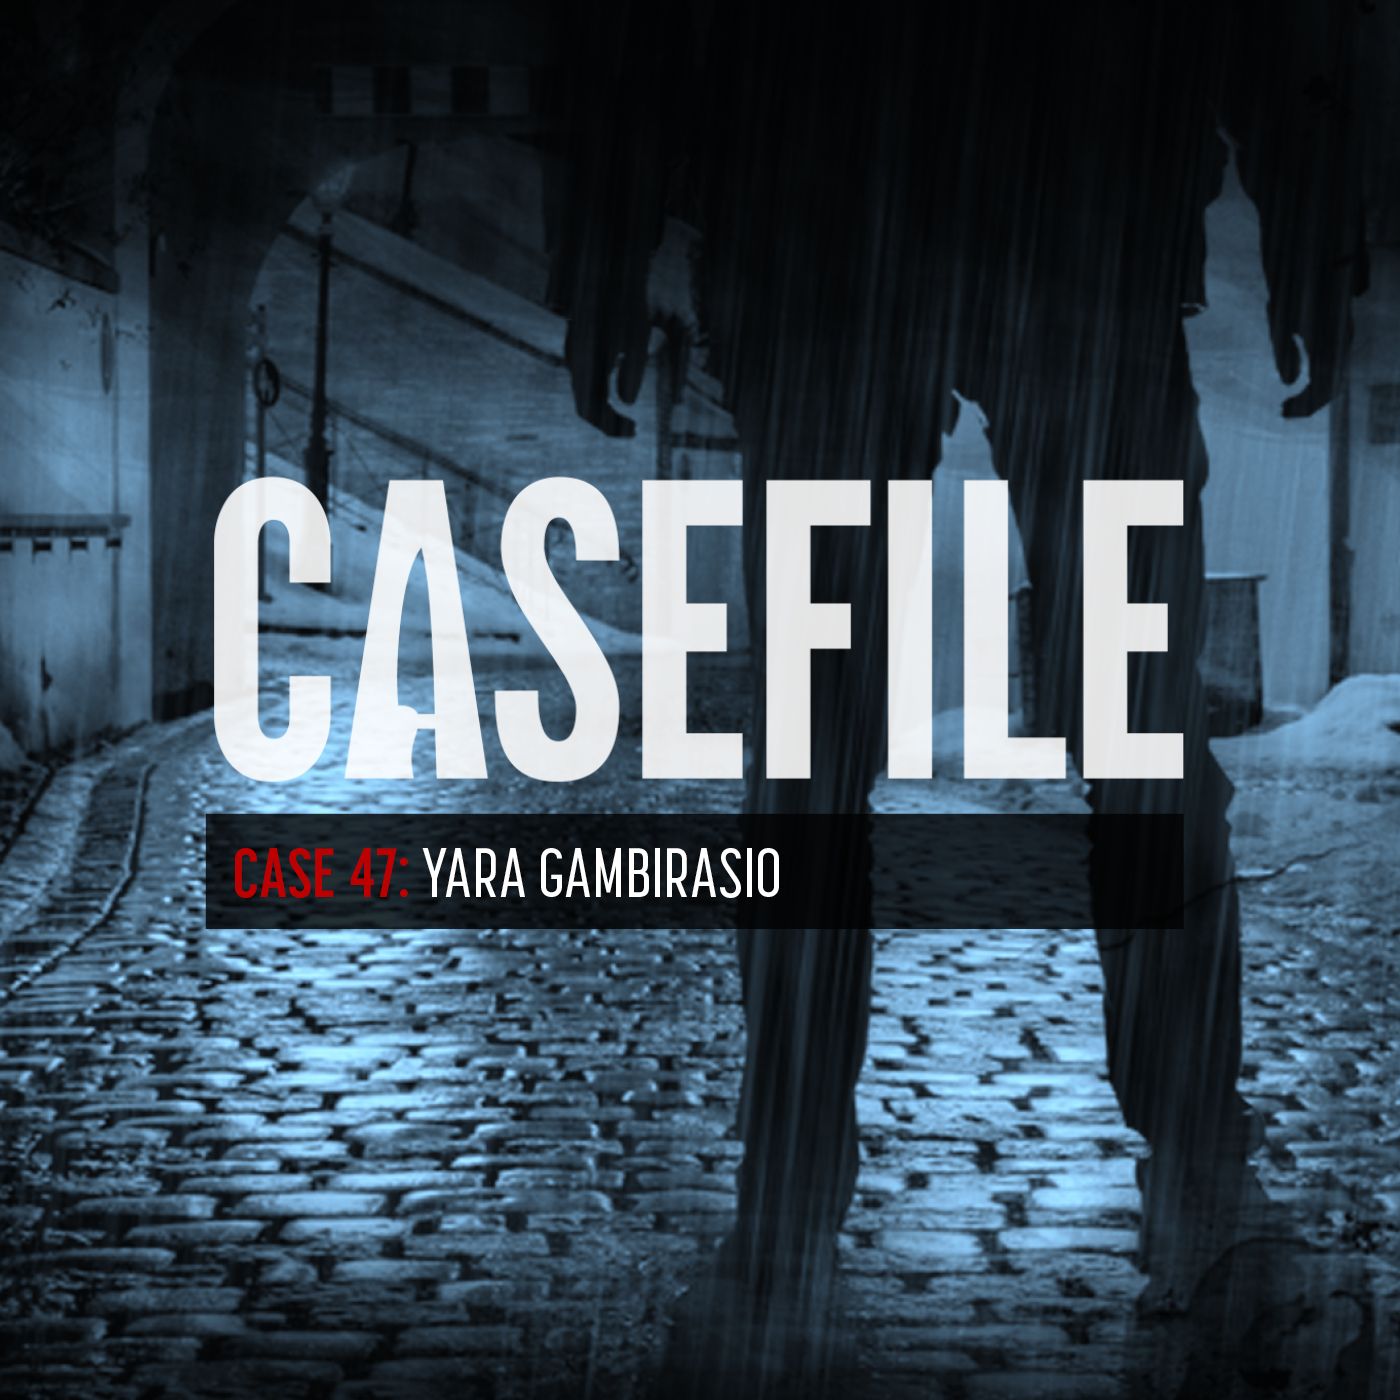 Case 47: Yara Gambirasio